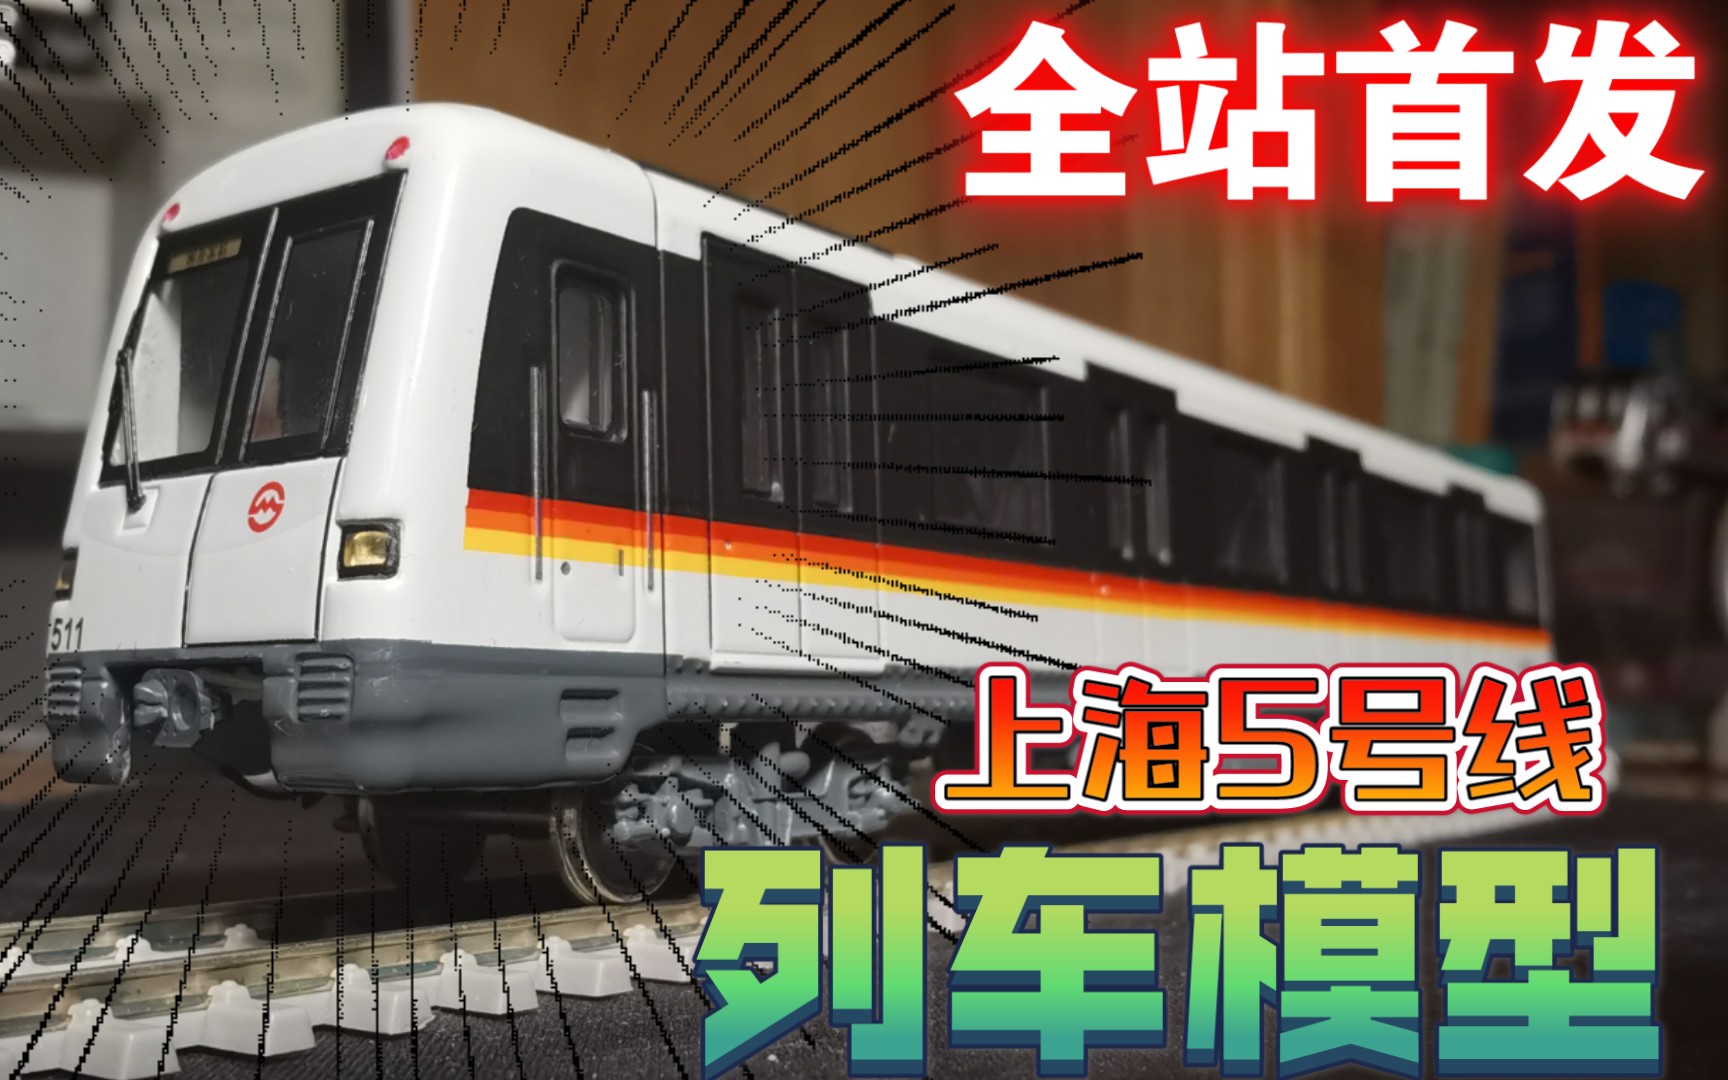 全站首发上海地铁5号线05c01型列车模型首发番茄炒蛋